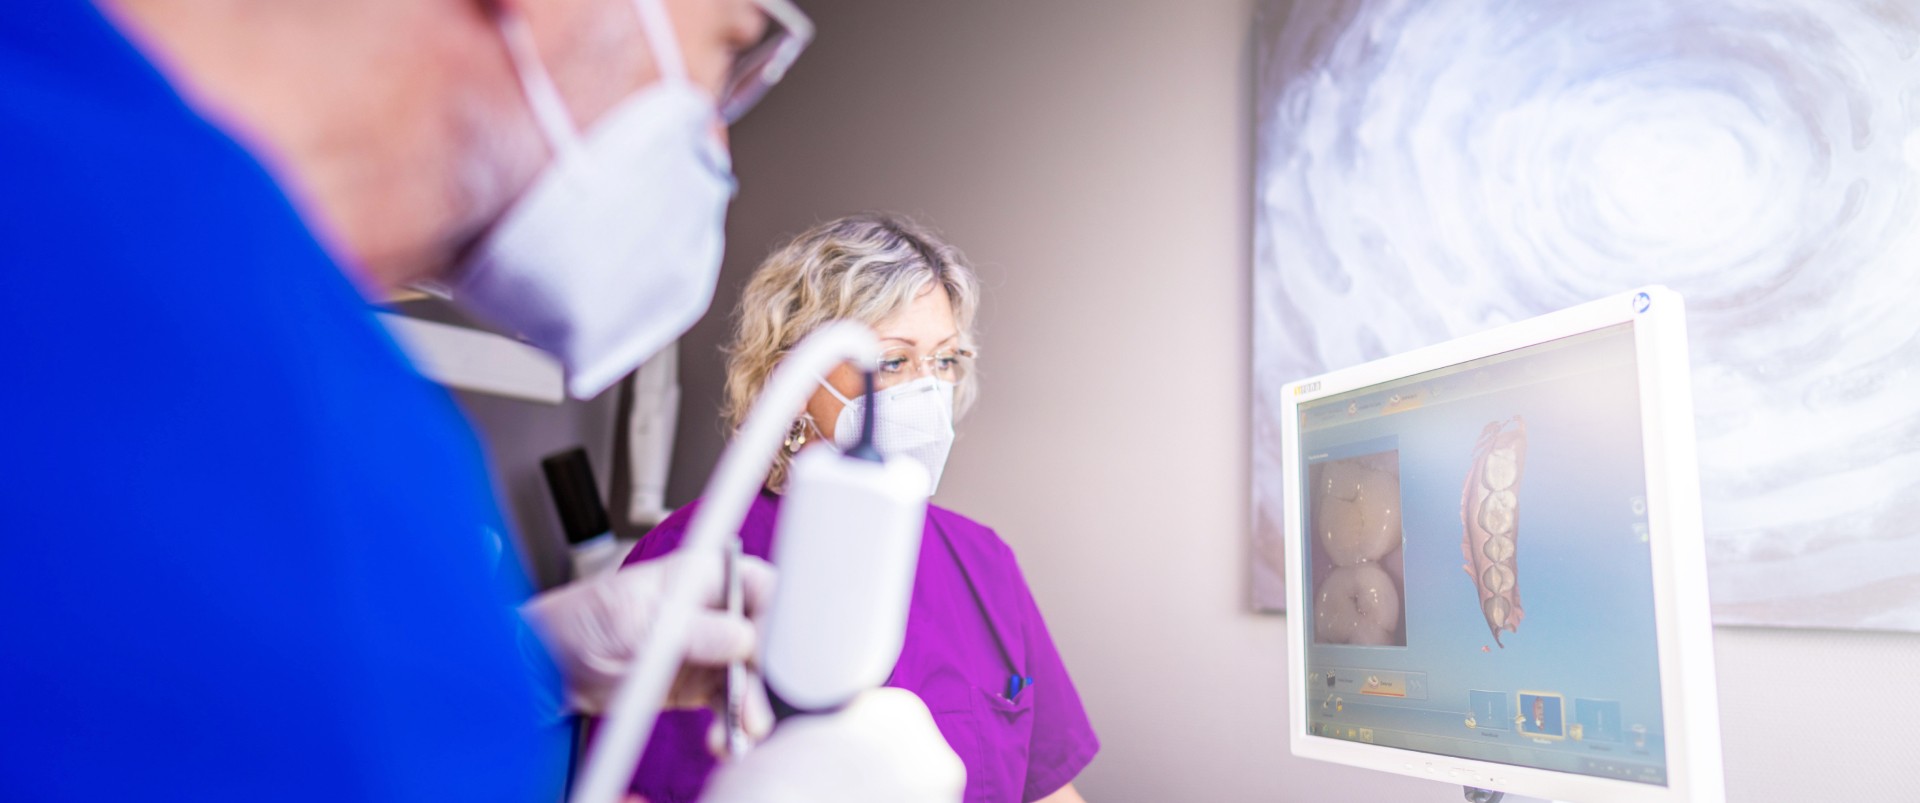 Dr Mortier chirurgien dentiste Nancy technologie empreinte numerique